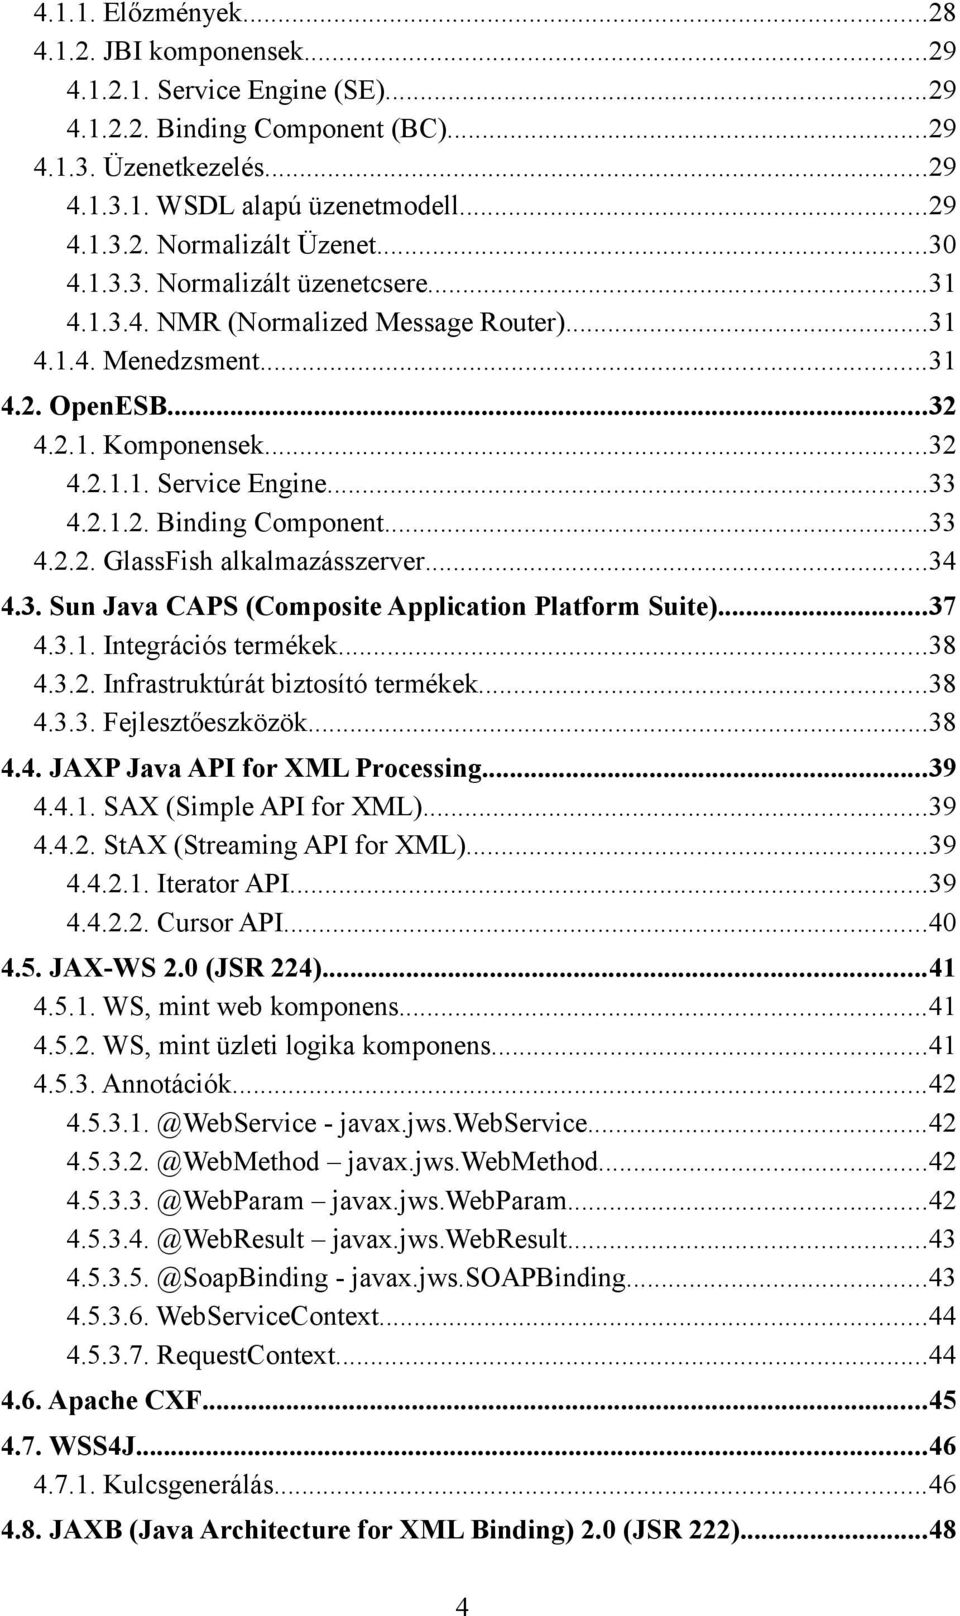 ..33 4.2.2. GlassFish alkalmazásszerver...34 4.3. Sun Java CAPS (Composite Application Platform Suite)...37 4.3.1. Integrációs termékek...38 4.3.2. Infrastruktúrát biztosító termékek...38 4.3.3. Fejlesztőeszközök.